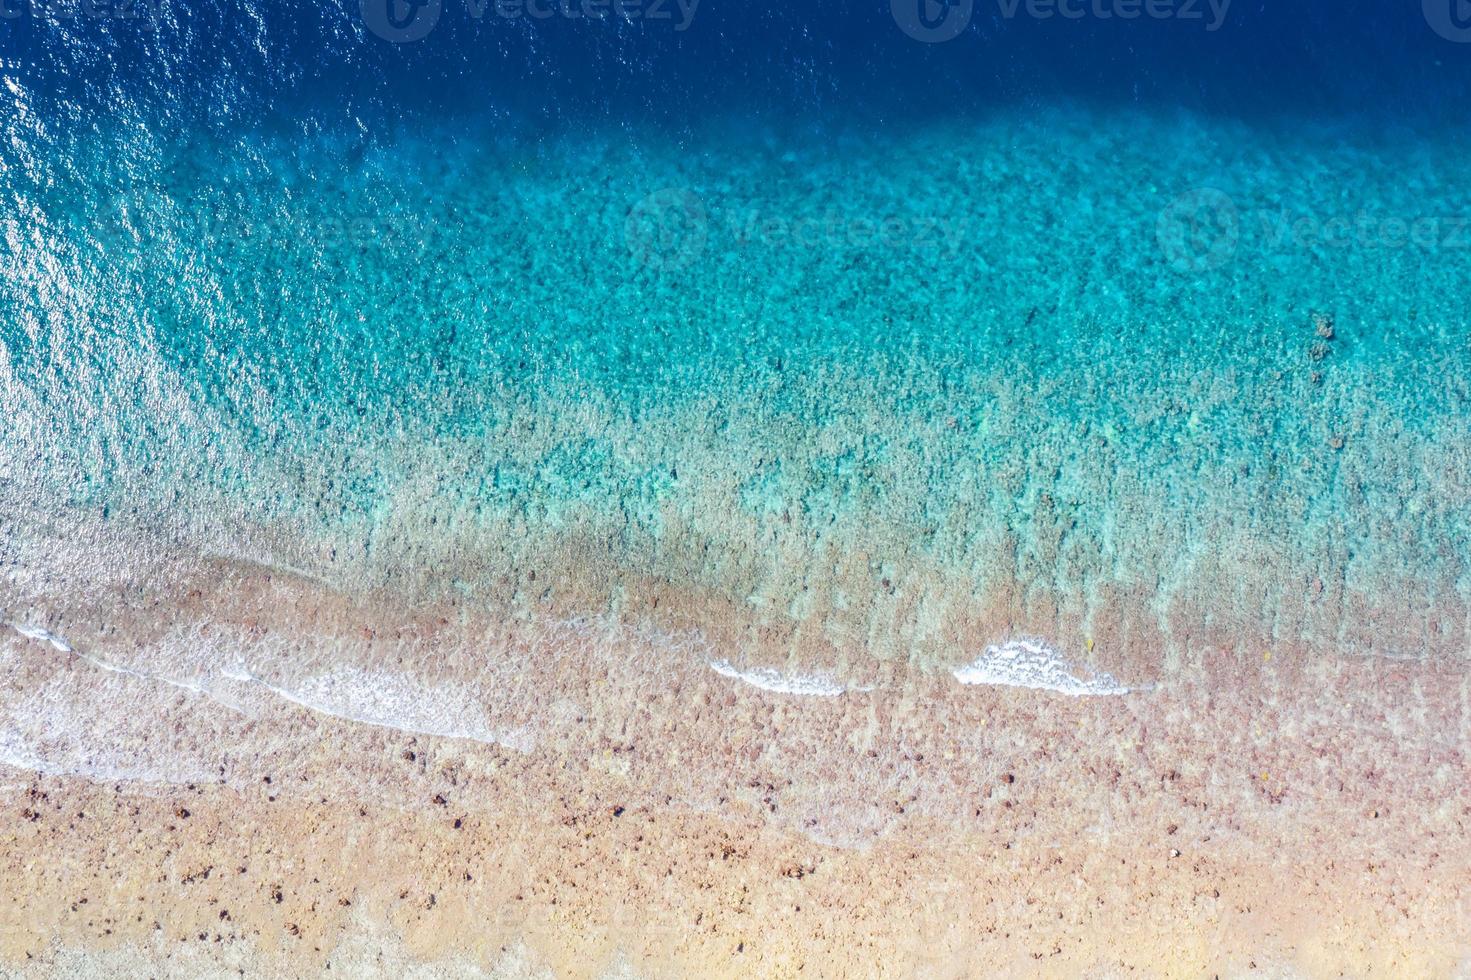  Hellblaue Hintergrundbild 1471x980. luftblick auf das meer, draufsicht auf den erstaunlichen naturozeanhintergrund. Hellblaue Wasserfarben, Lagunenstrand mit Wellen, die an sonnigen Tagen plätschern. fliegendes Drohnenfoto, erstaunliche Naturlandschaft mit Korallenriff 16789413 Stock